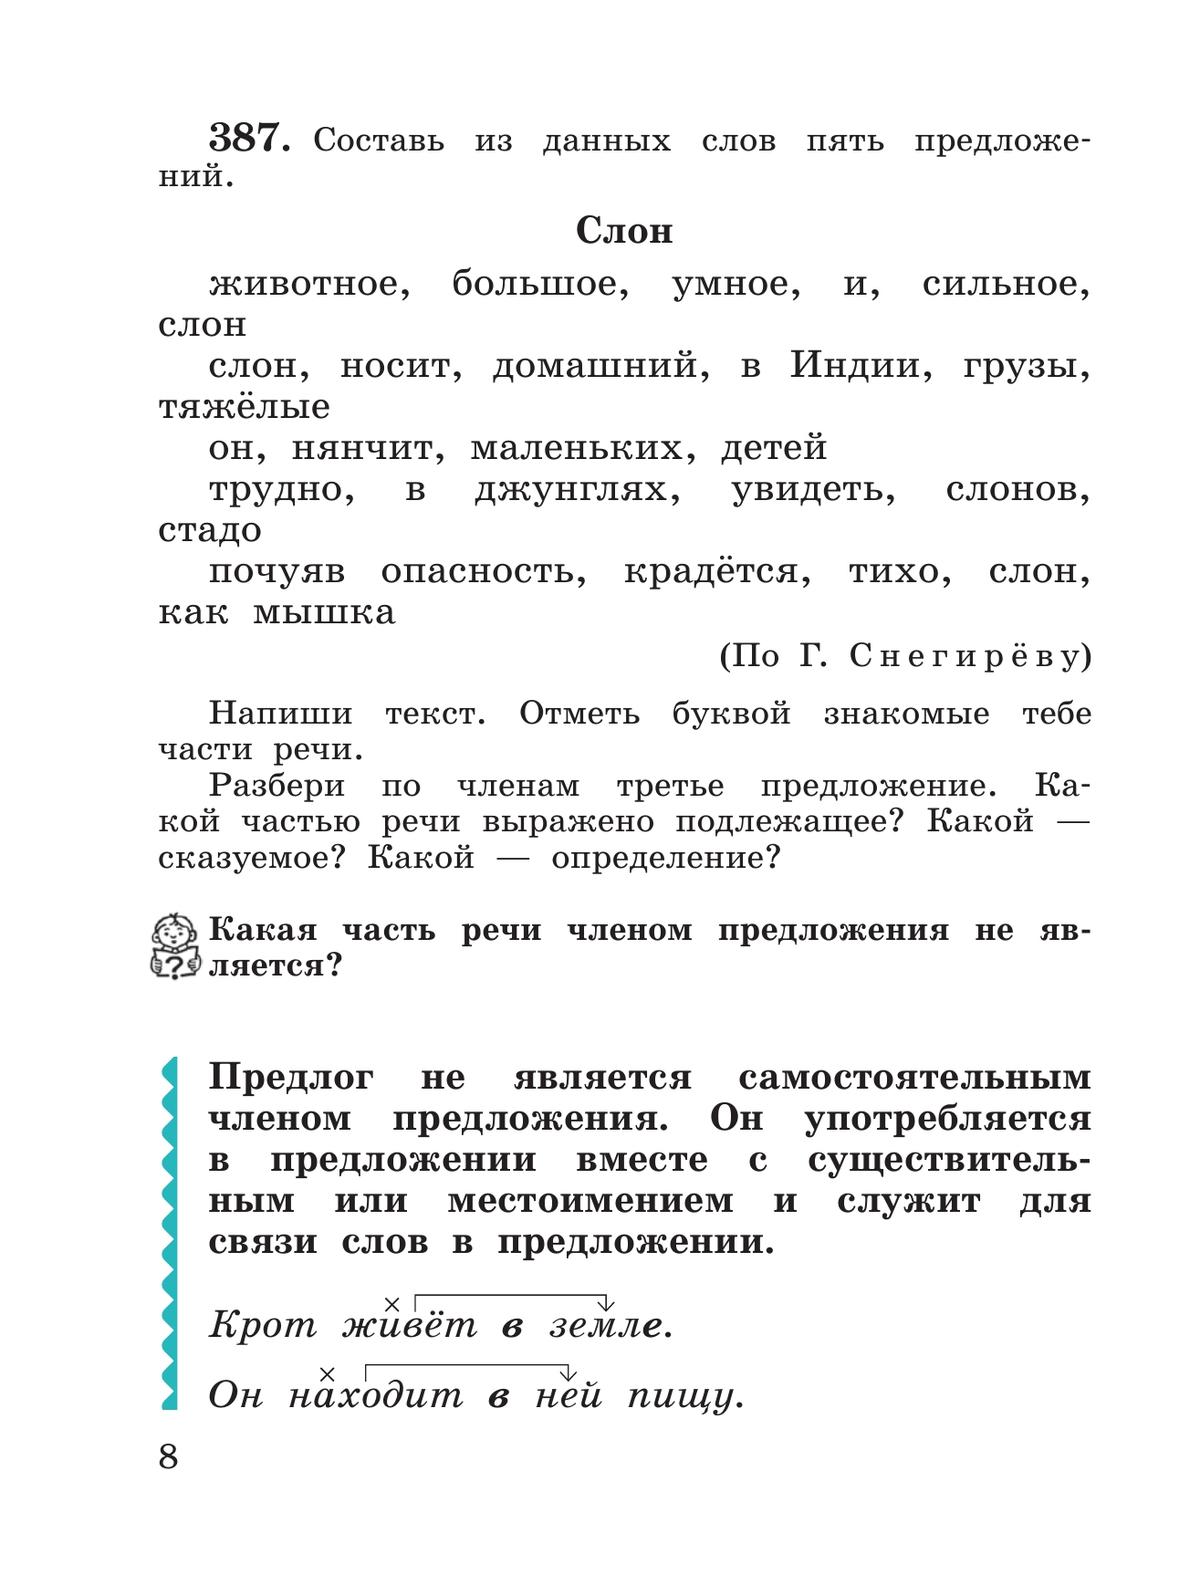 Русский язык. 3 класс. Учебник. В 2 ч. Часть 2 3